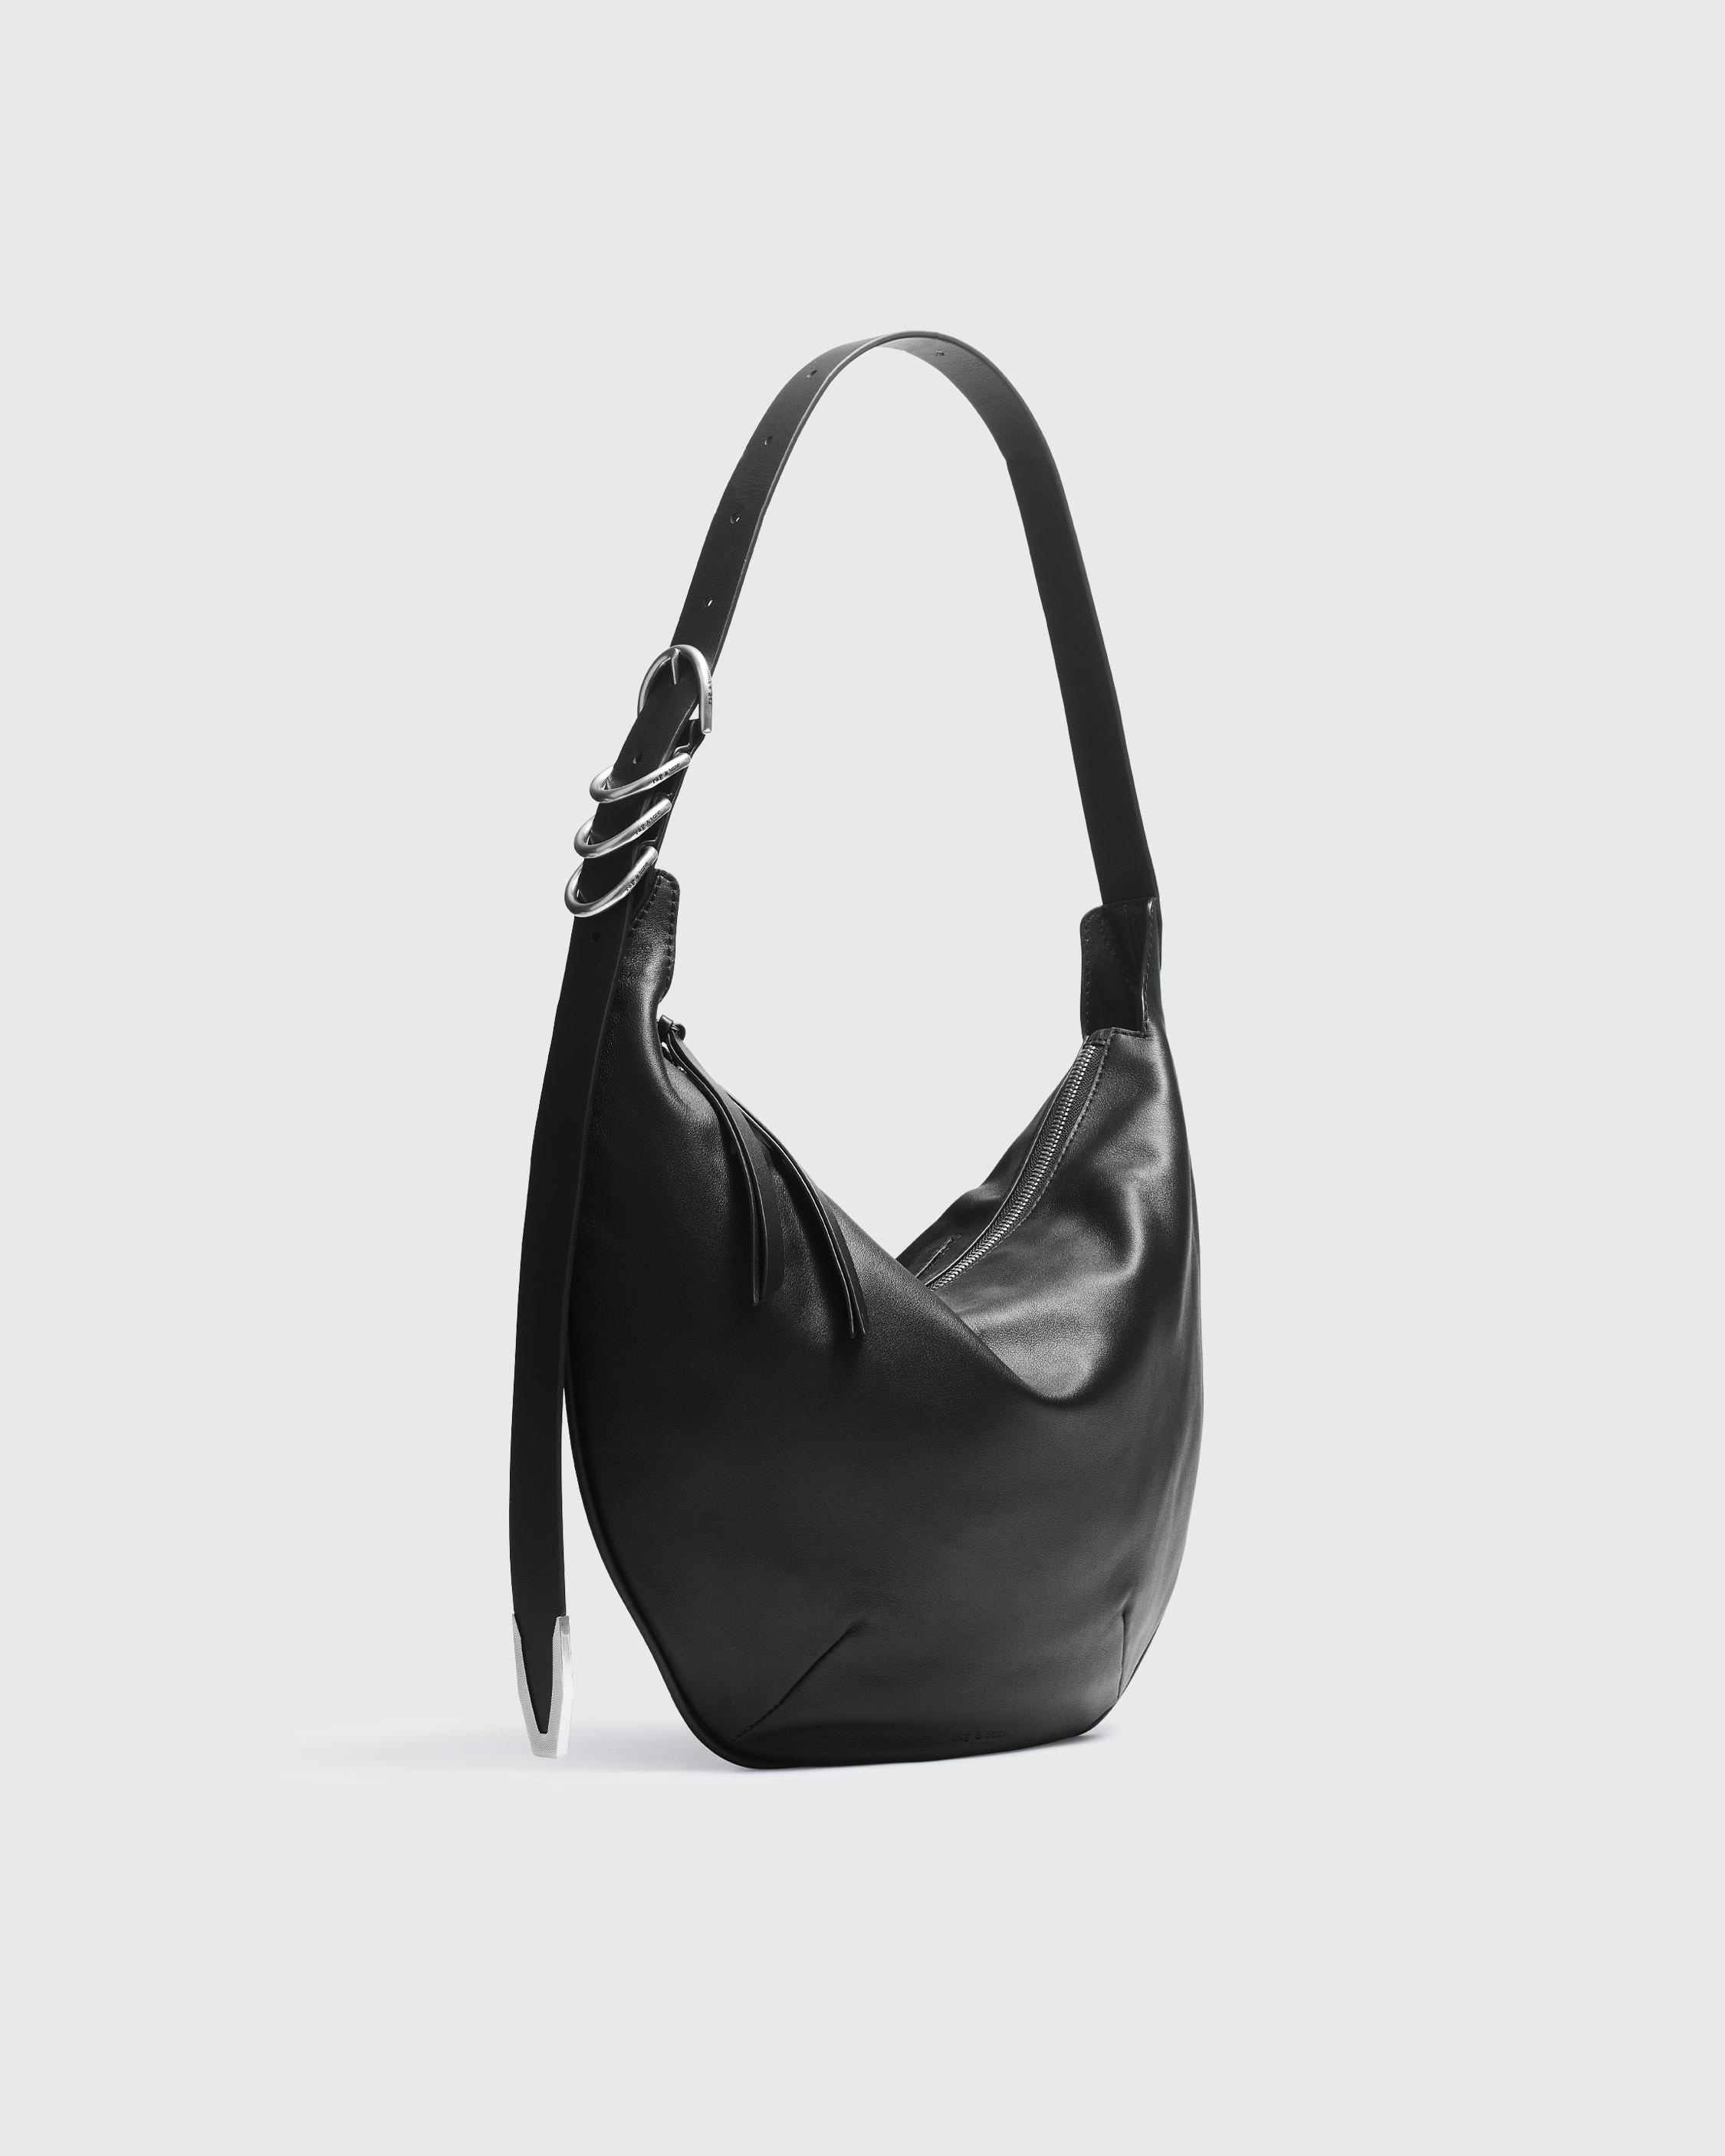 Spire Shoulder Bag - Leather
Medium Shoulder Bag - 3